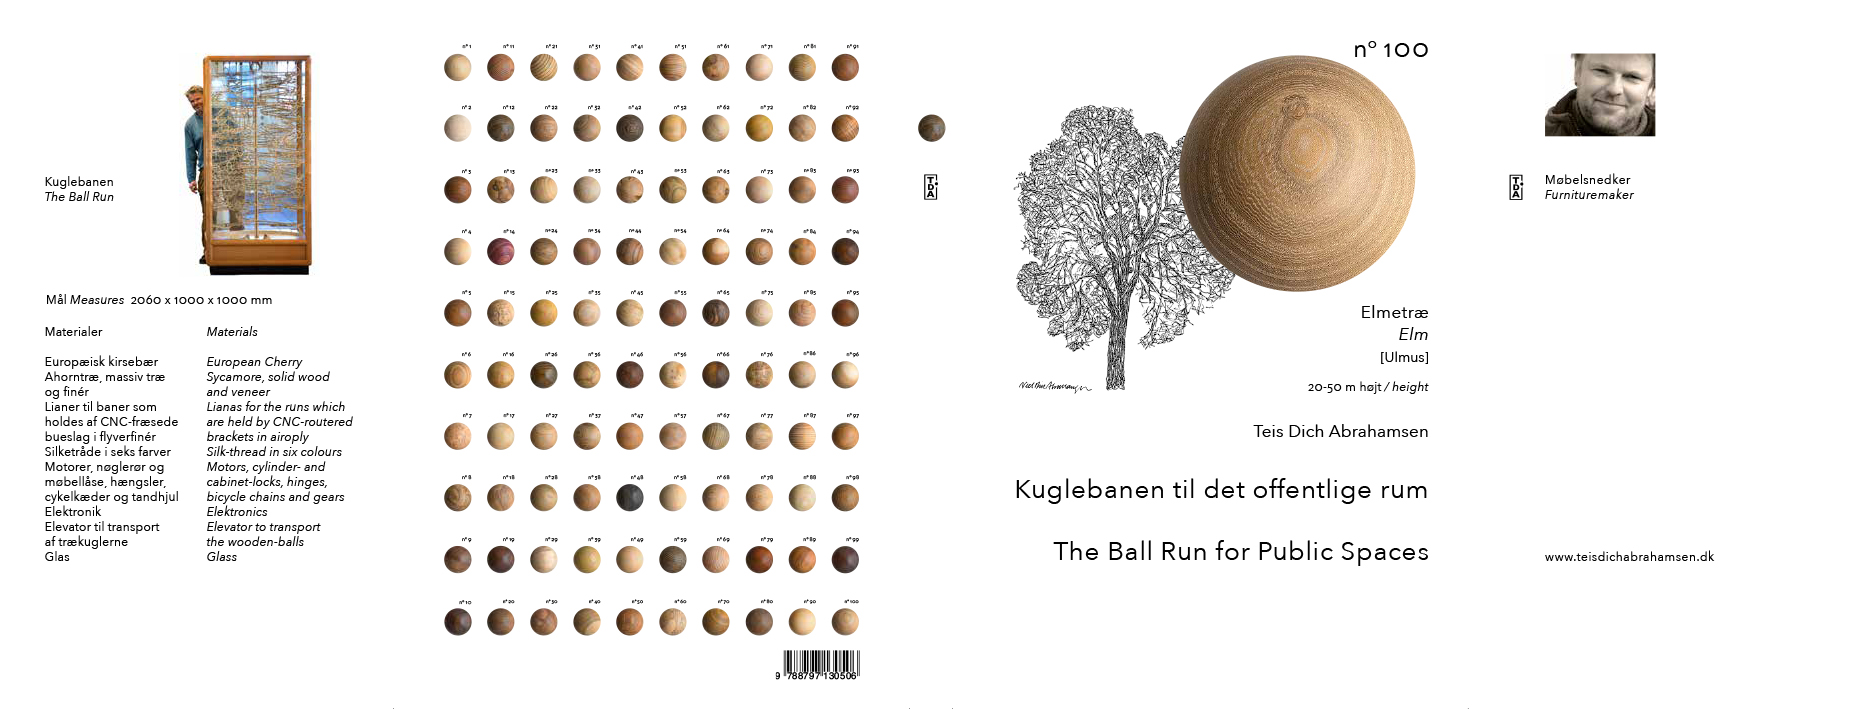 Omslag Forside, bagside med 100 kugler og klapper med beskrivelse af banens konstruktion, Dansk og engelsk tekst